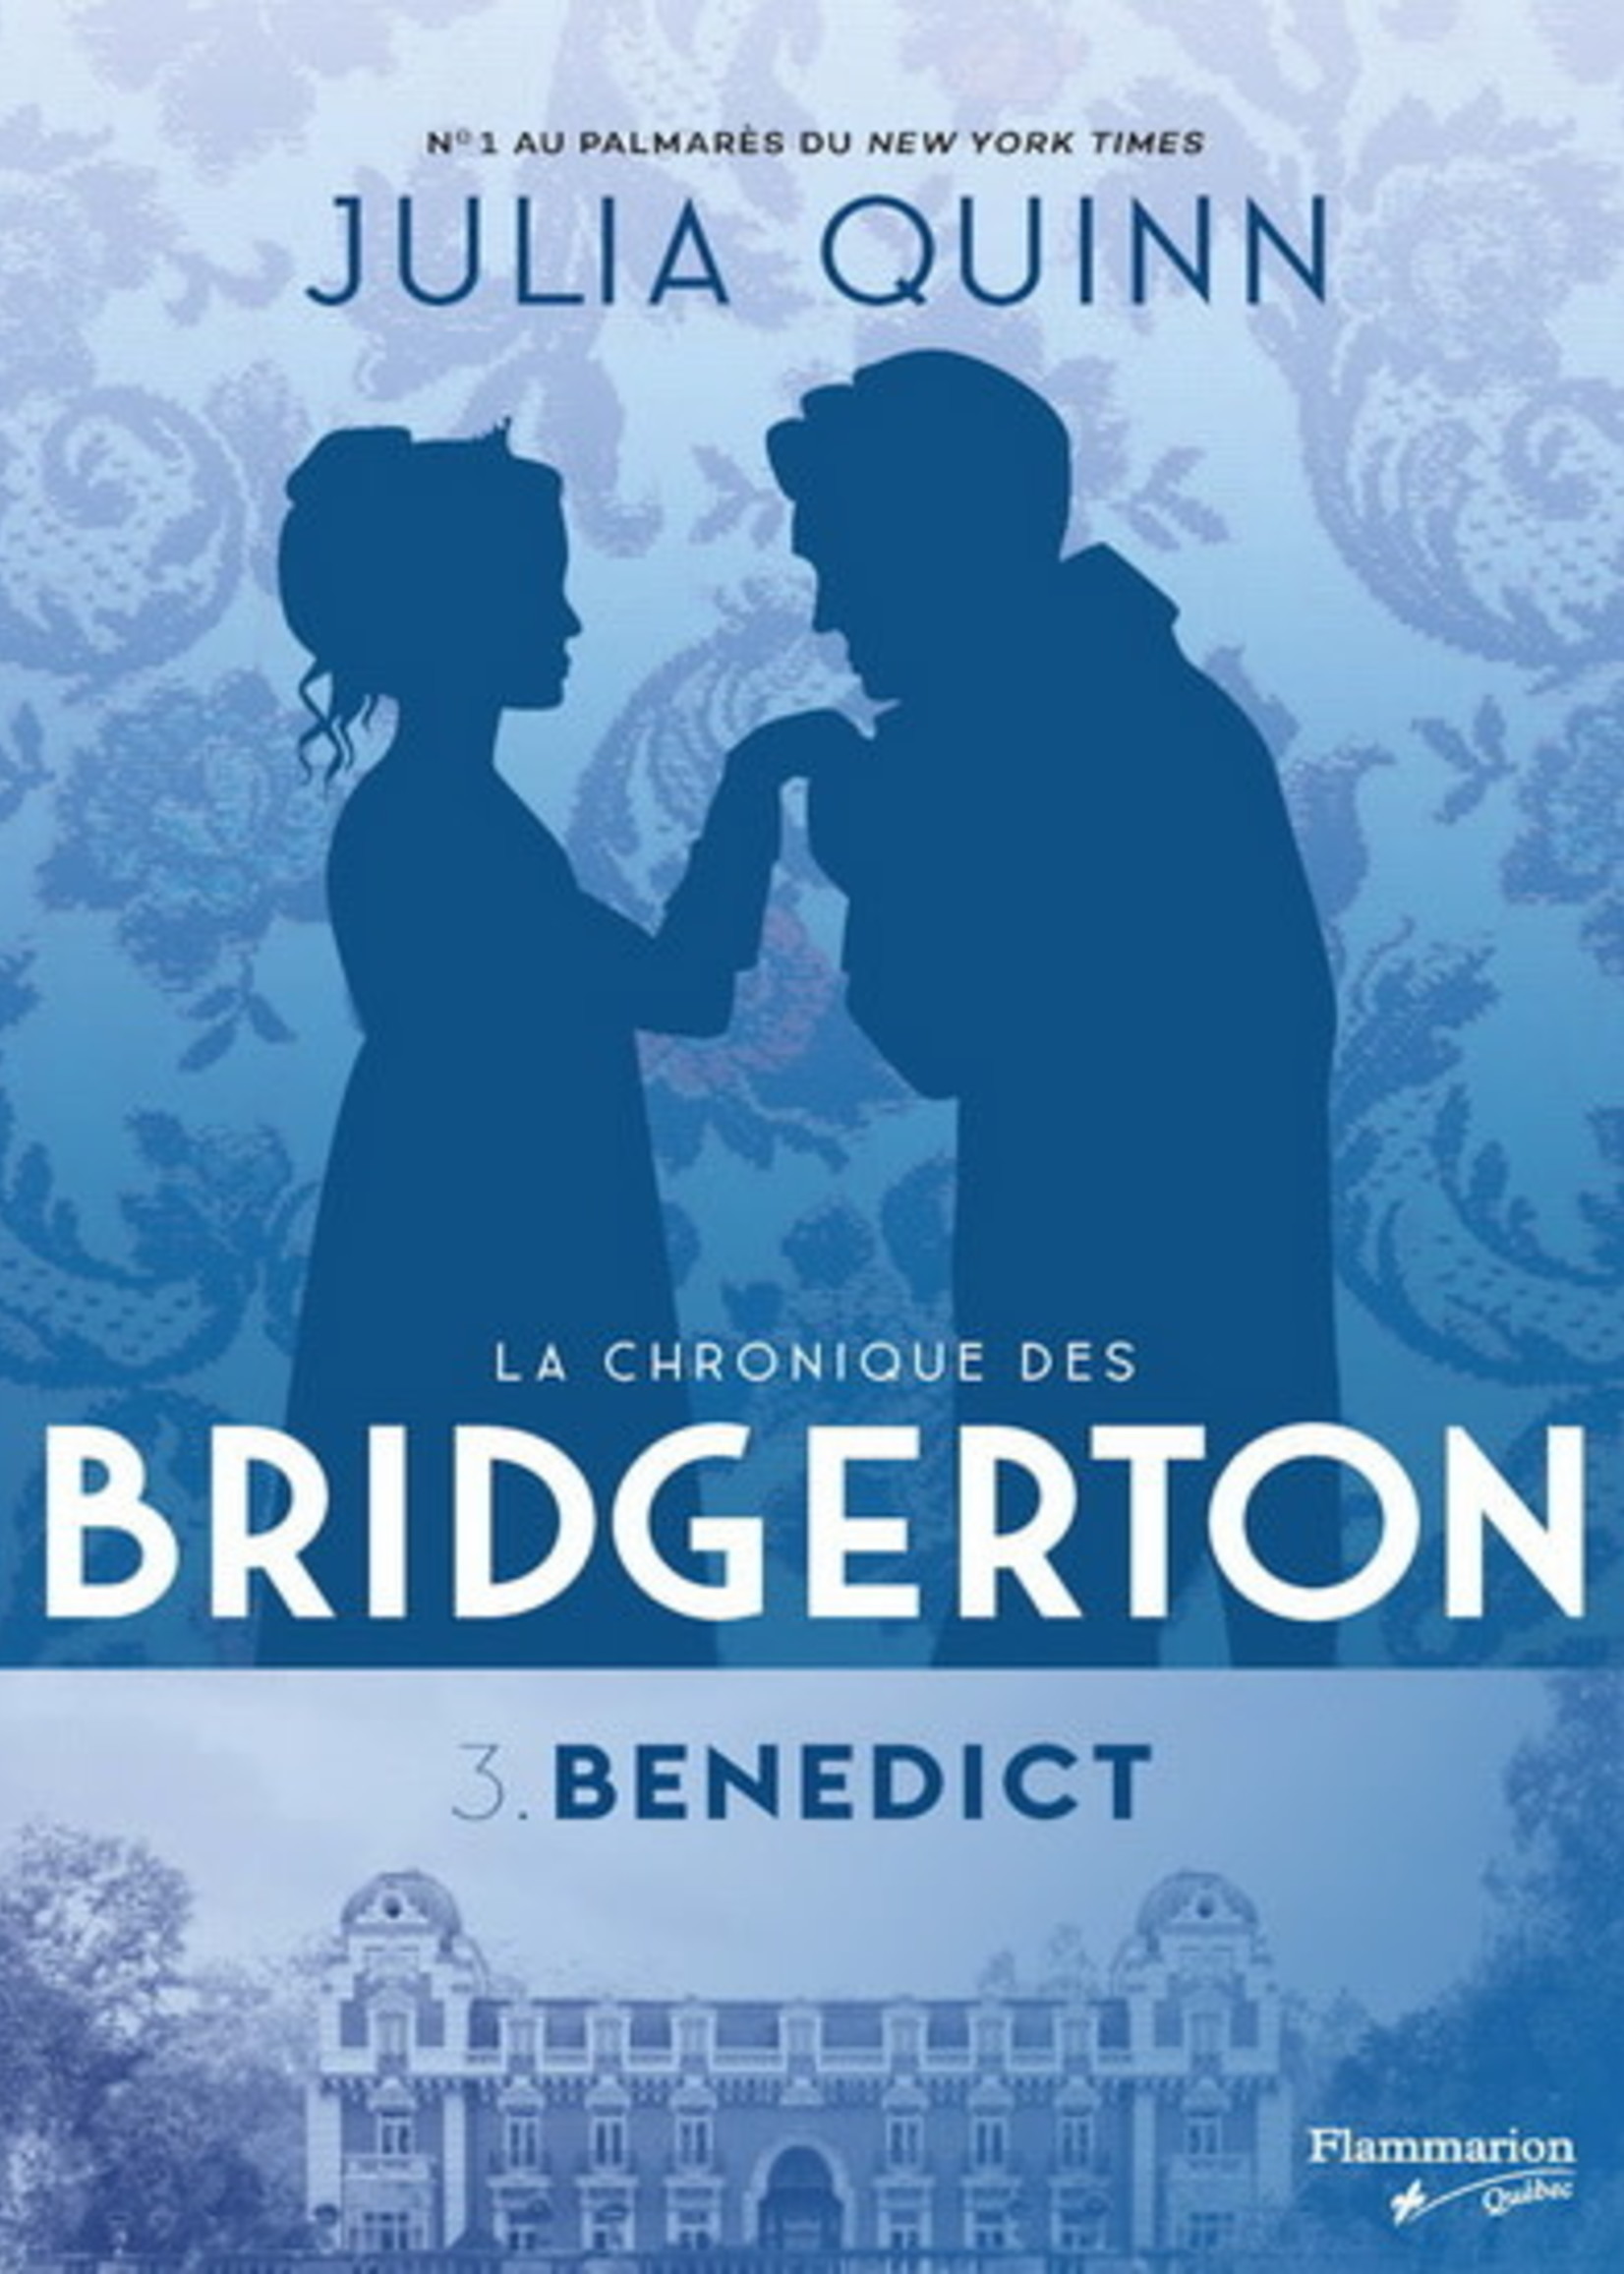 La chronique des Bridgerton T.03 Benedict by Julia Quinn